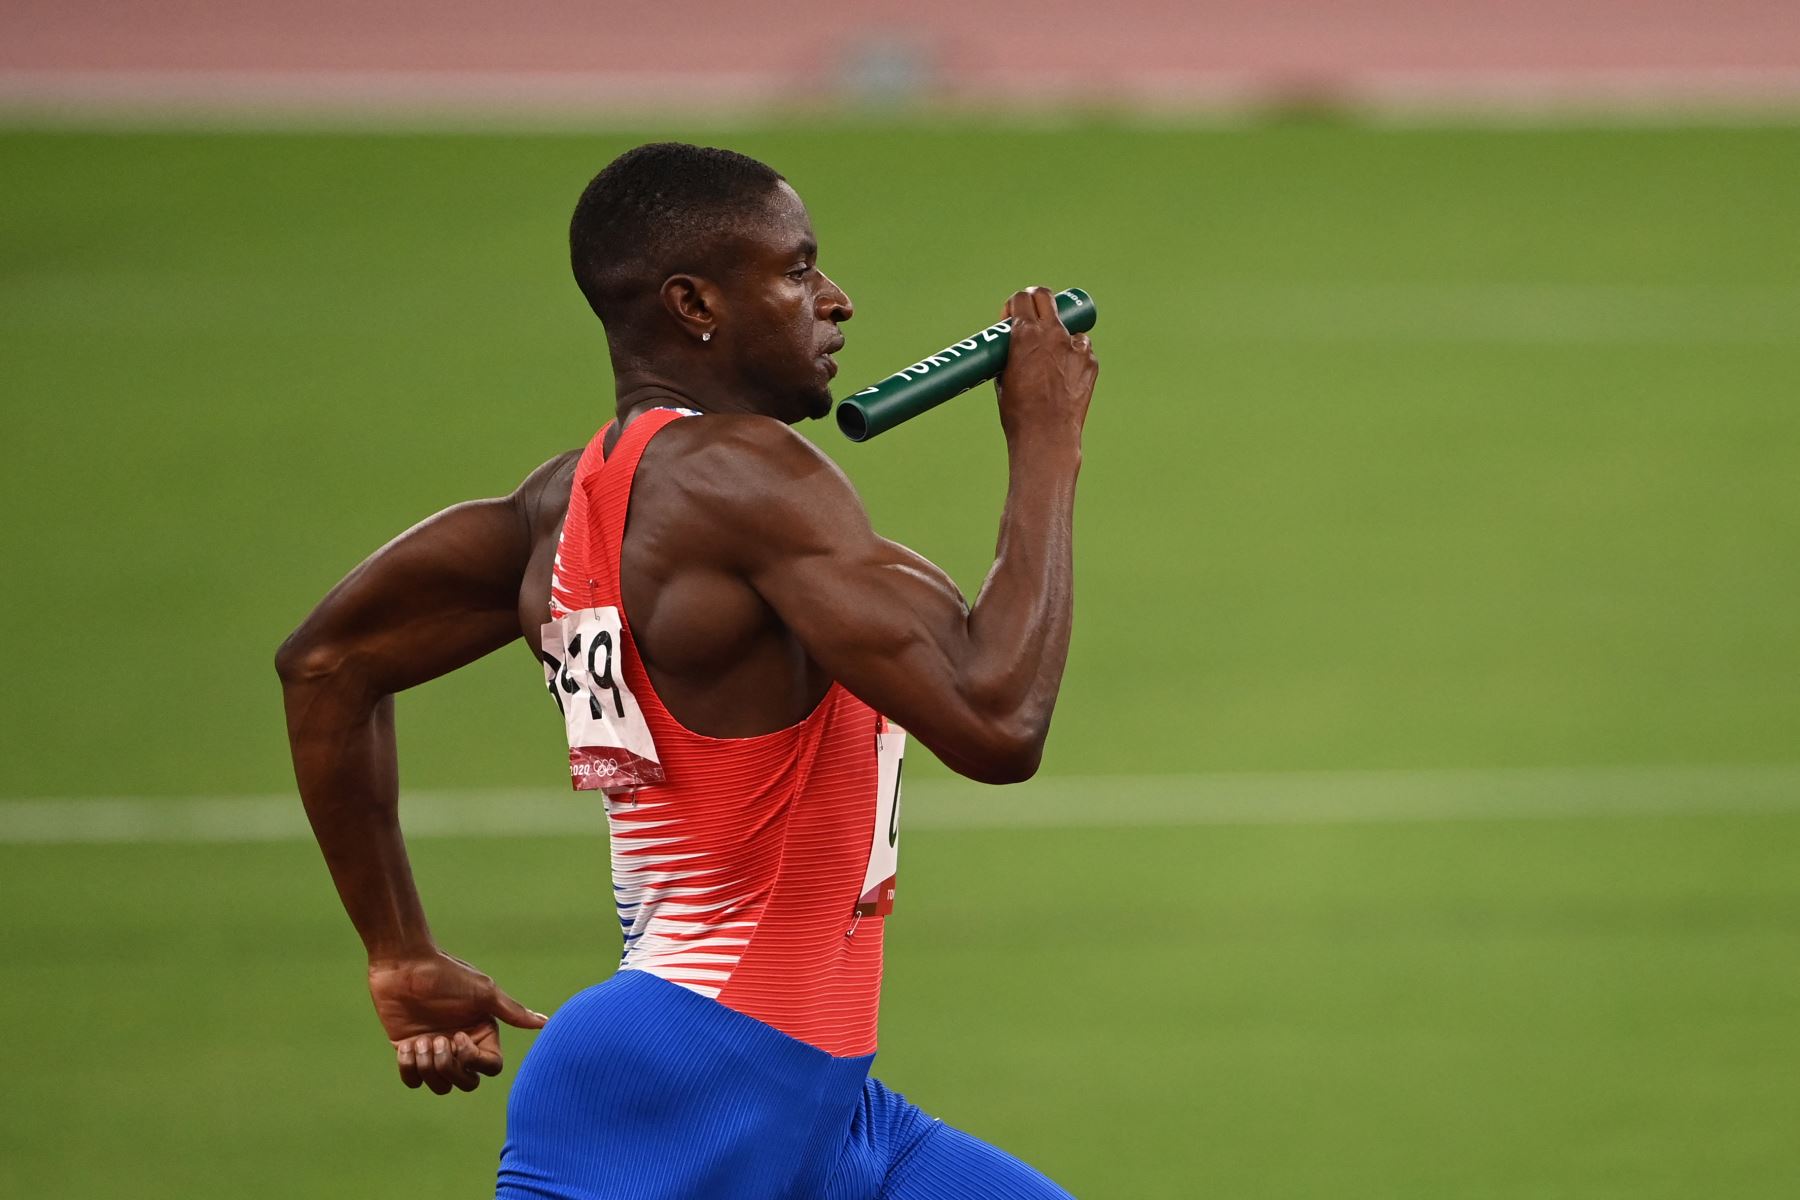 Bryce Deadmon de EE. UU. Compite en las eliminatorias de relevos de 4x400 m masculinos durante los Juegos Olímpicos de Tokio 2020 en el Estadio Olímpico de Tokio el 6 de agosto de 2021. Foto: AFP